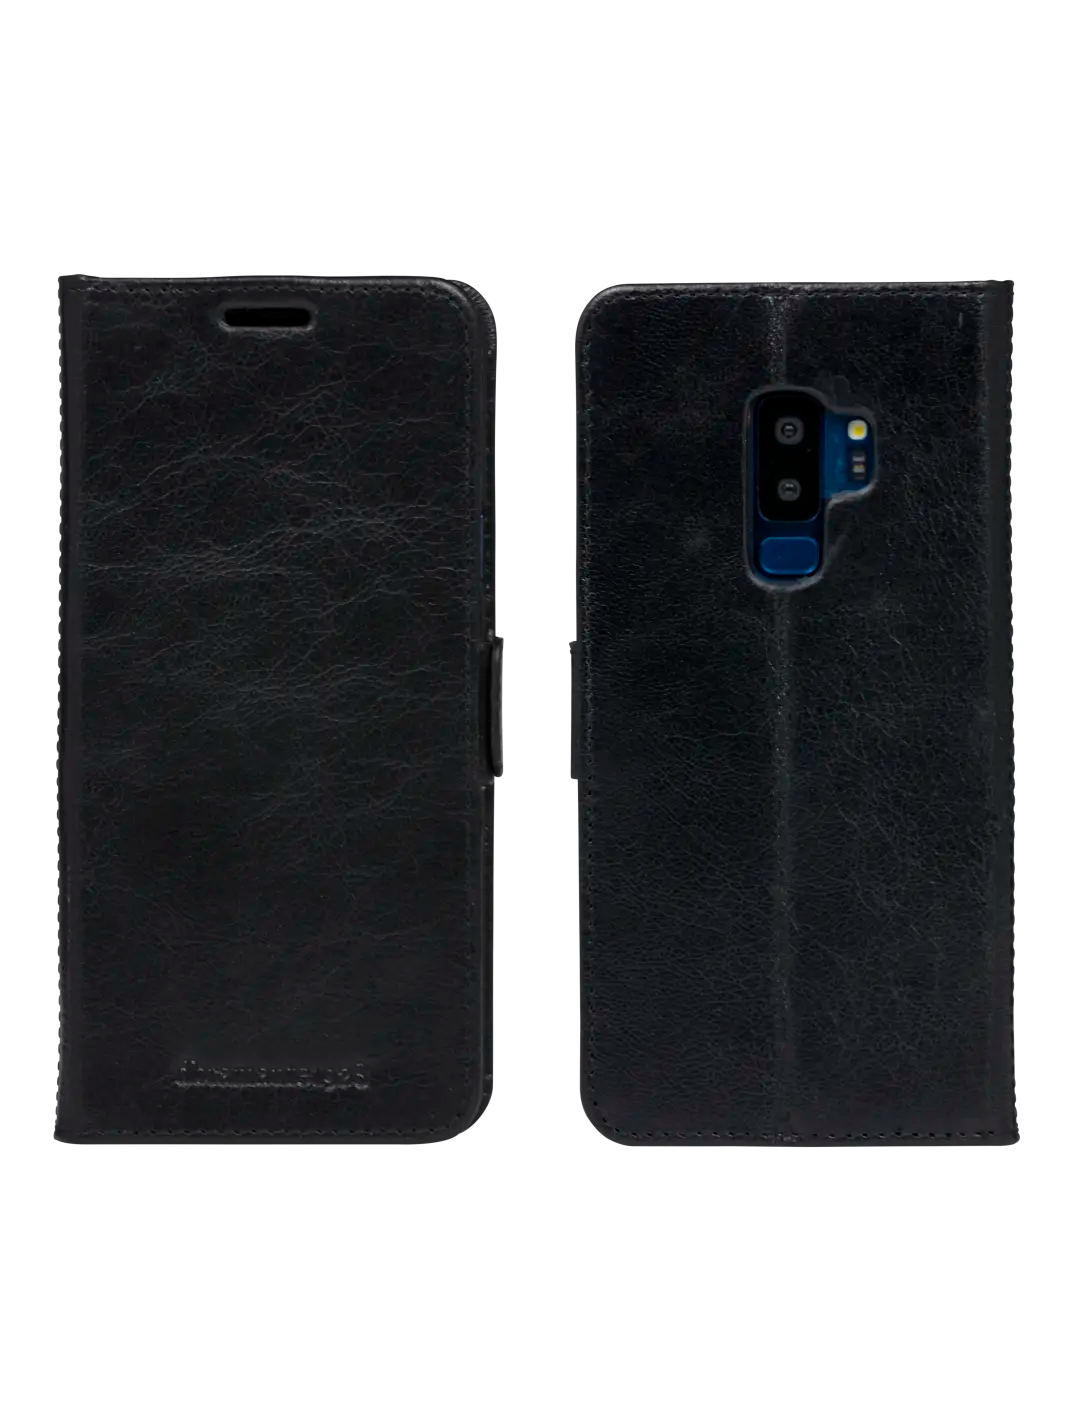 Copenhagen 1. Gen Black Galaxy S9+ Phone Cases